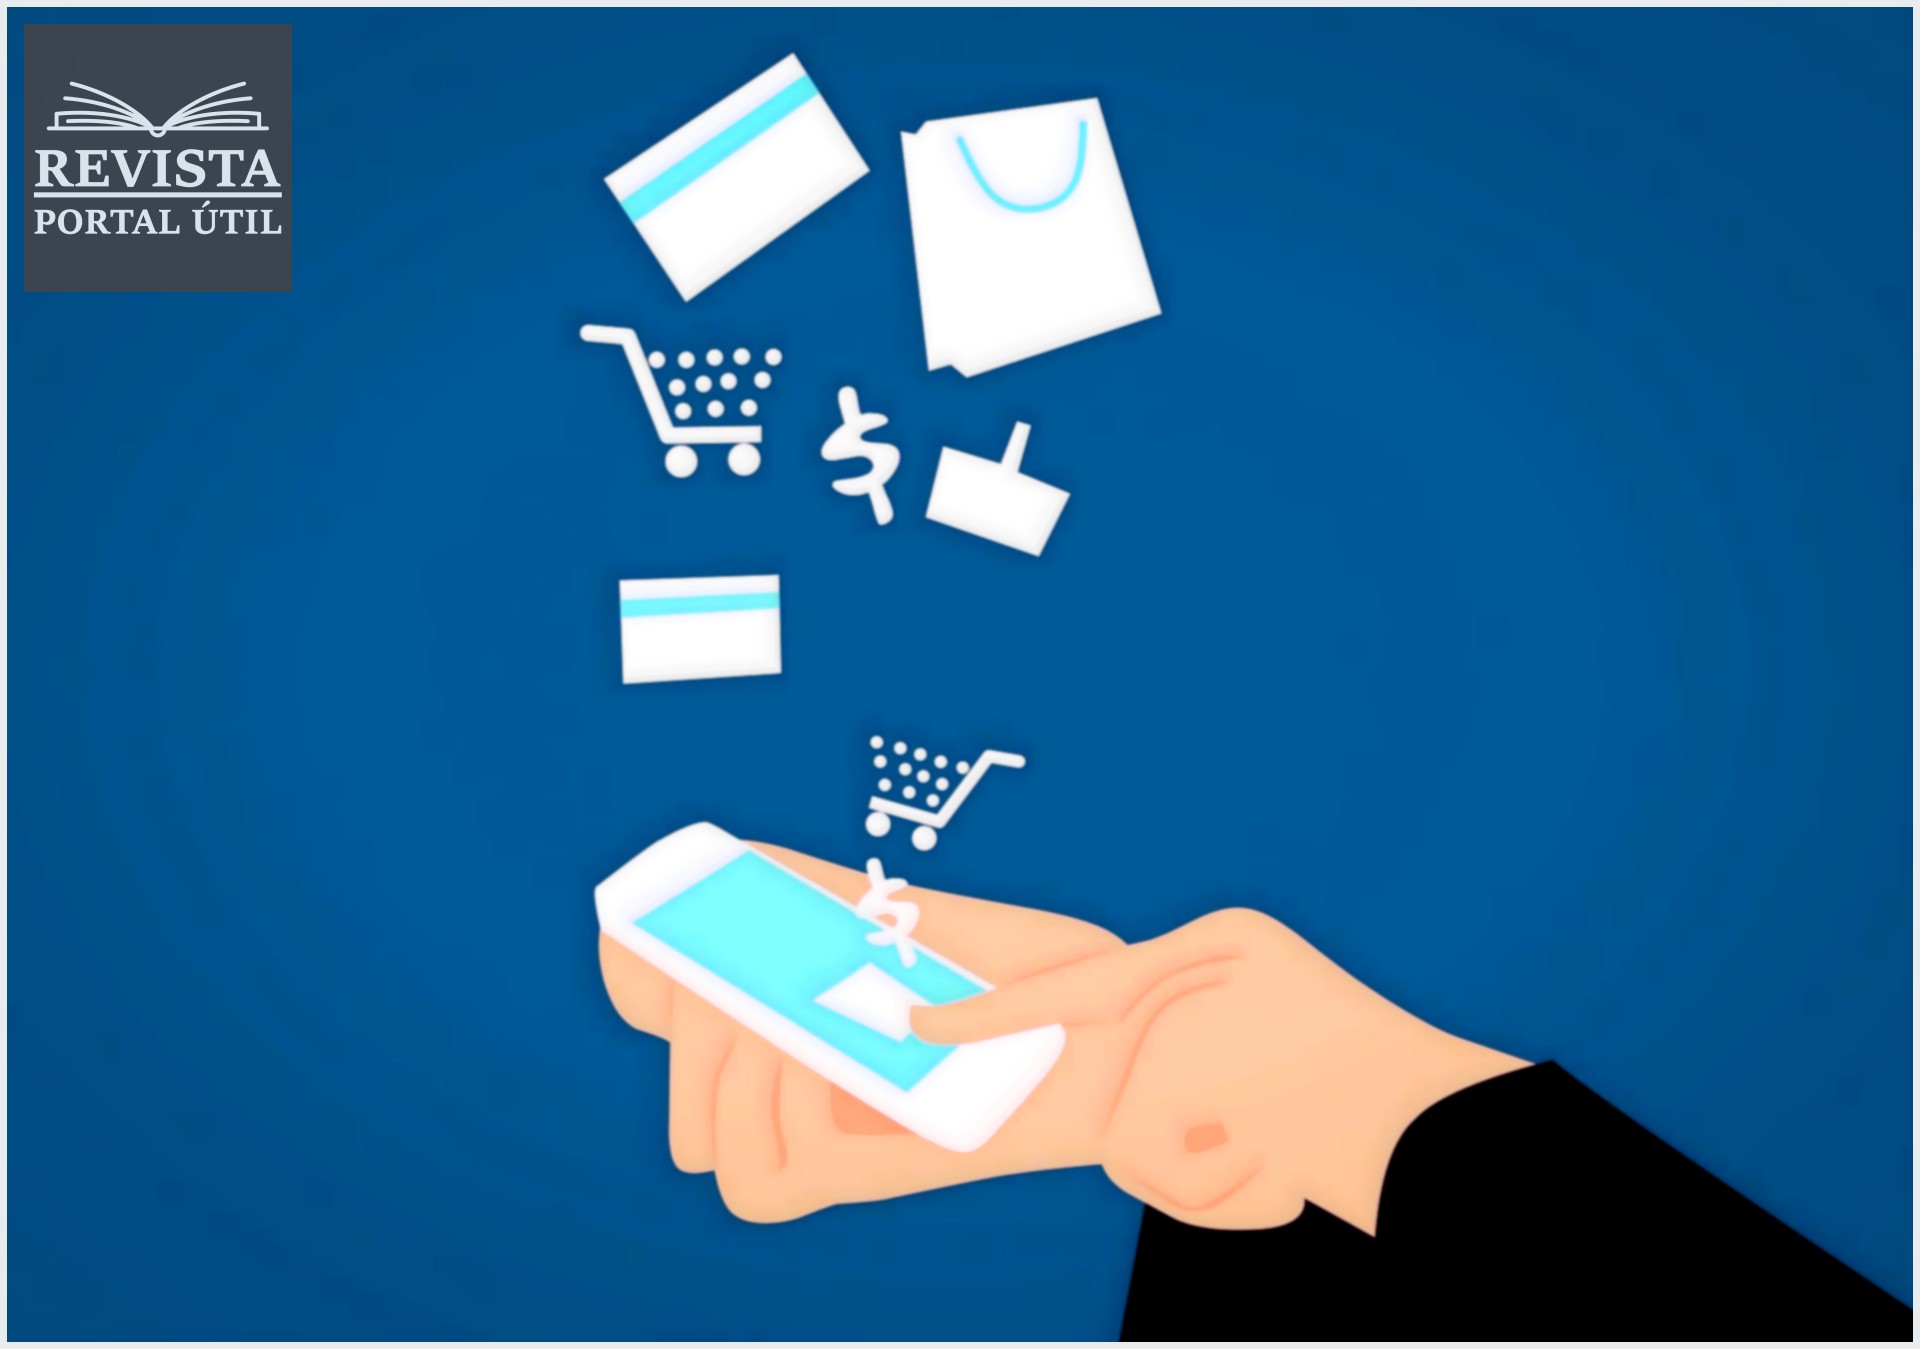 Carnê digital: parcele suas compras na internet sem cartão